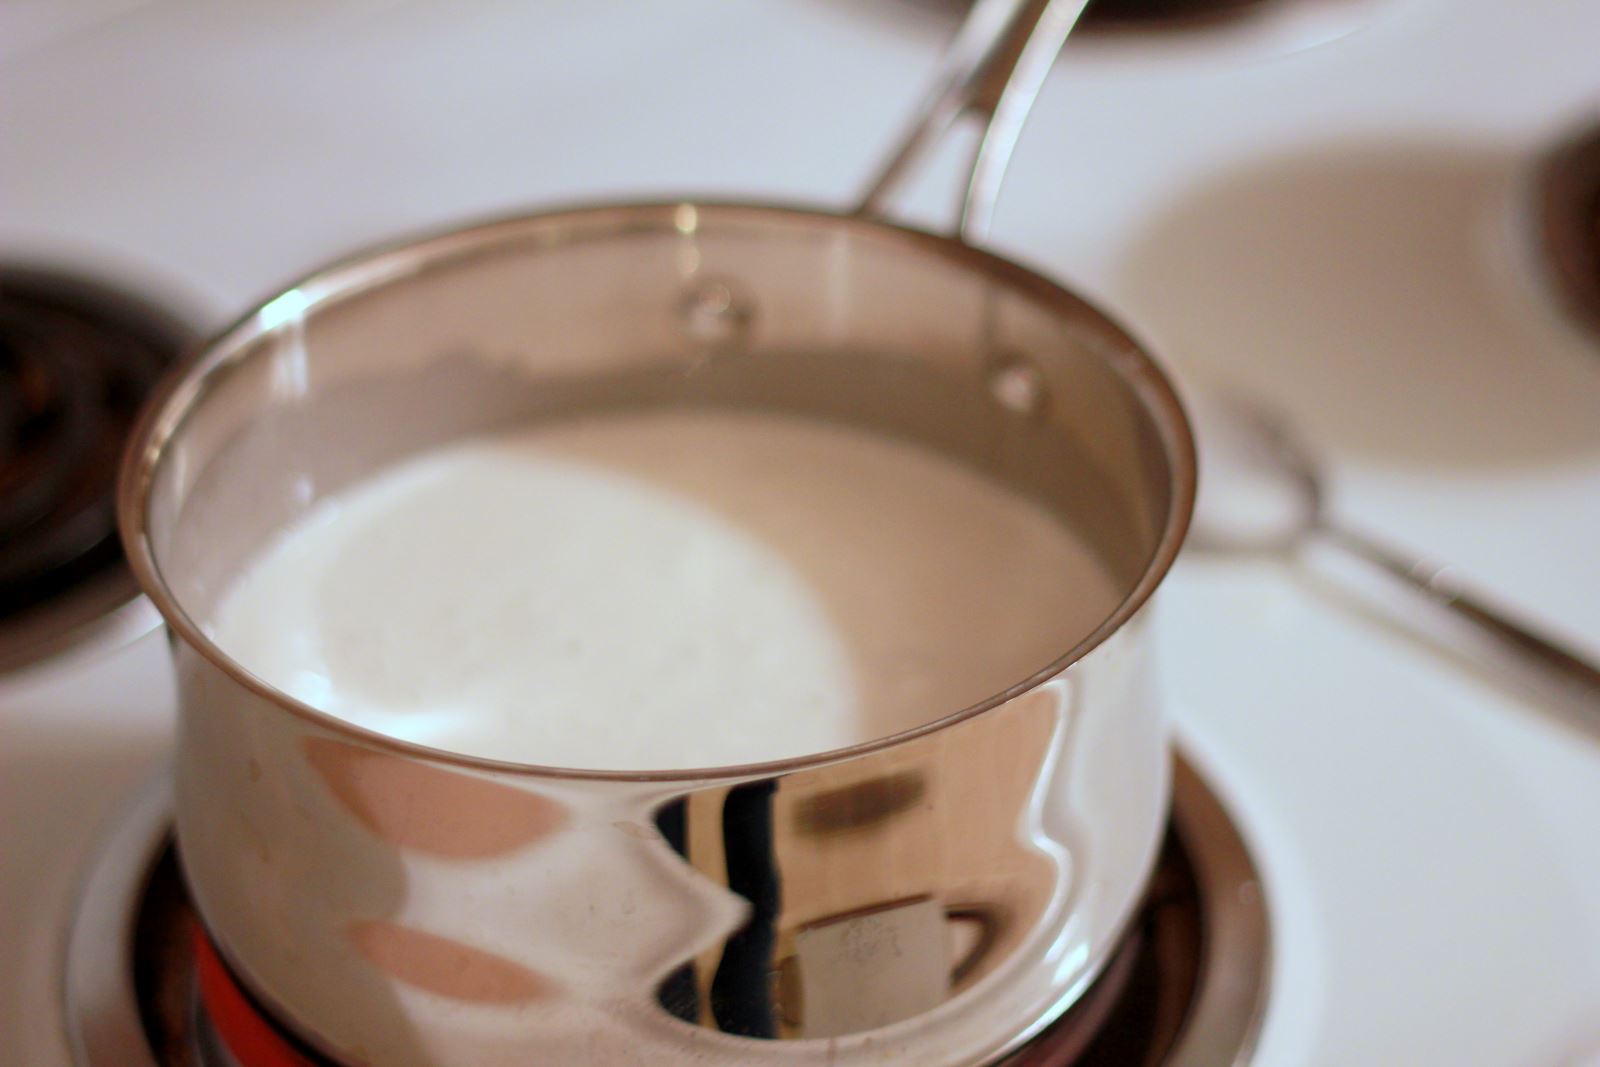  Khuấy đều hỗn hợp sữa tươi và sữa đặc rồi cho vào nồi đặt lên bếp đun